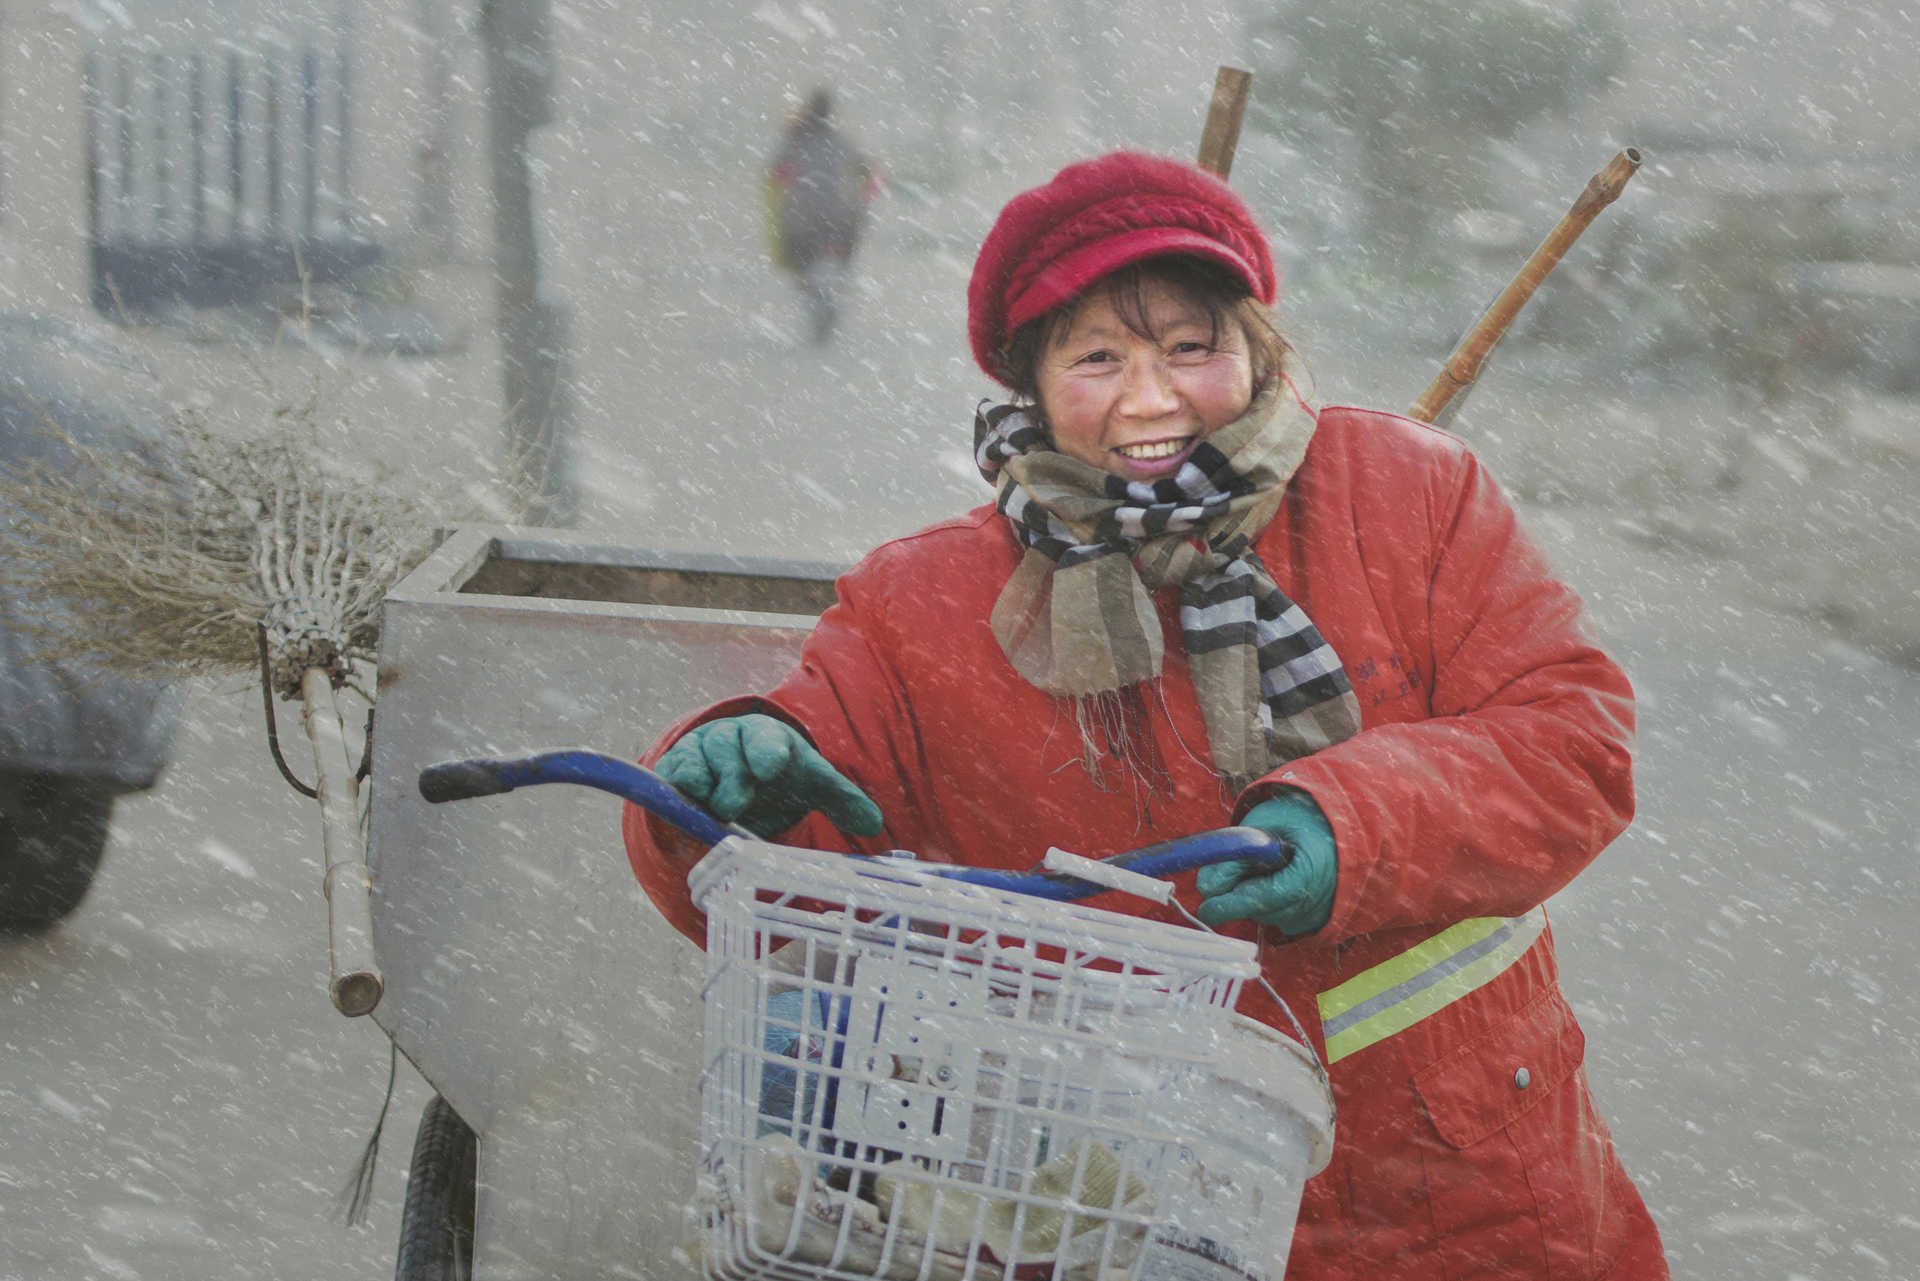 风雪环卫工--2016年1月14日摄于江苏省金湖县。清晨，大雪纷飞，一位环卫工人正顶风冒雪地在工作。.jpg